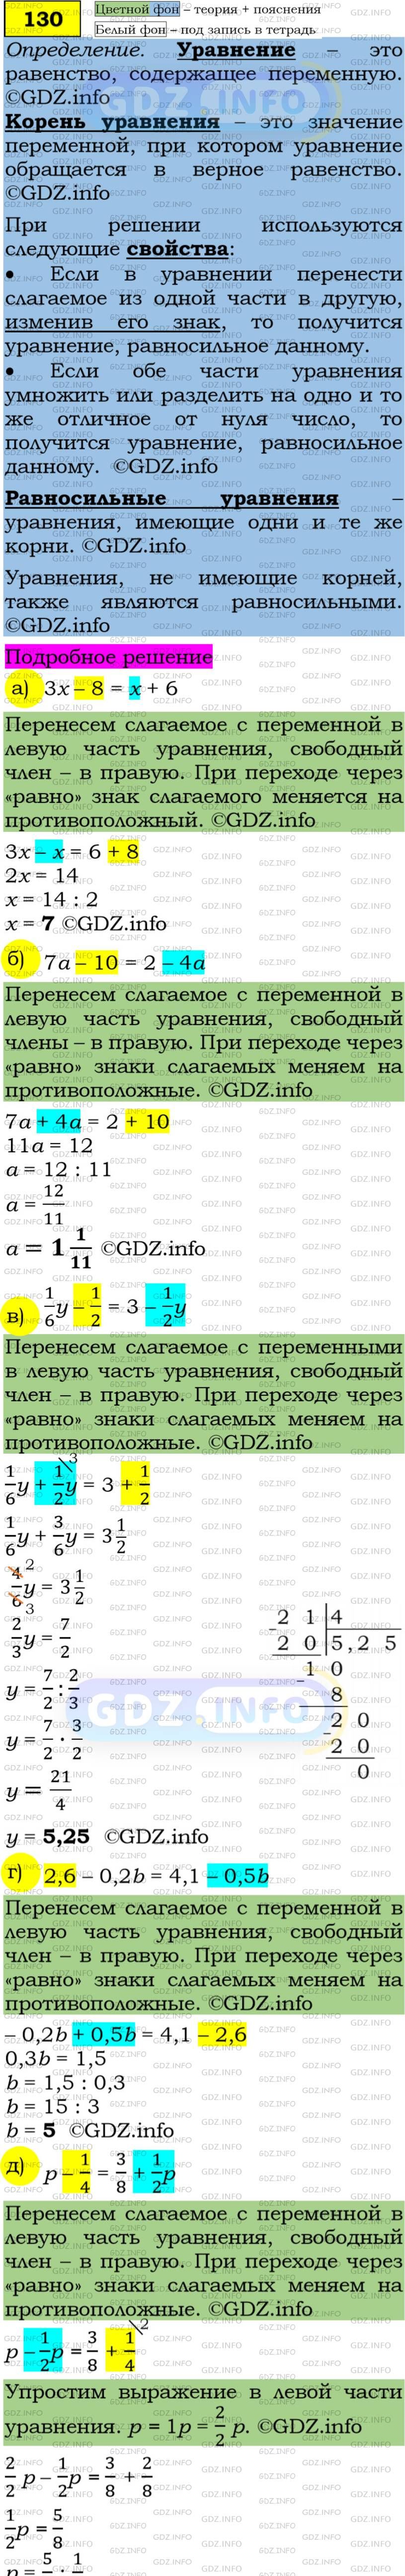 Фото подробного решения: Номер задания №130 из ГДЗ по Алгебре 7 класс: Макарычев Ю.Н.